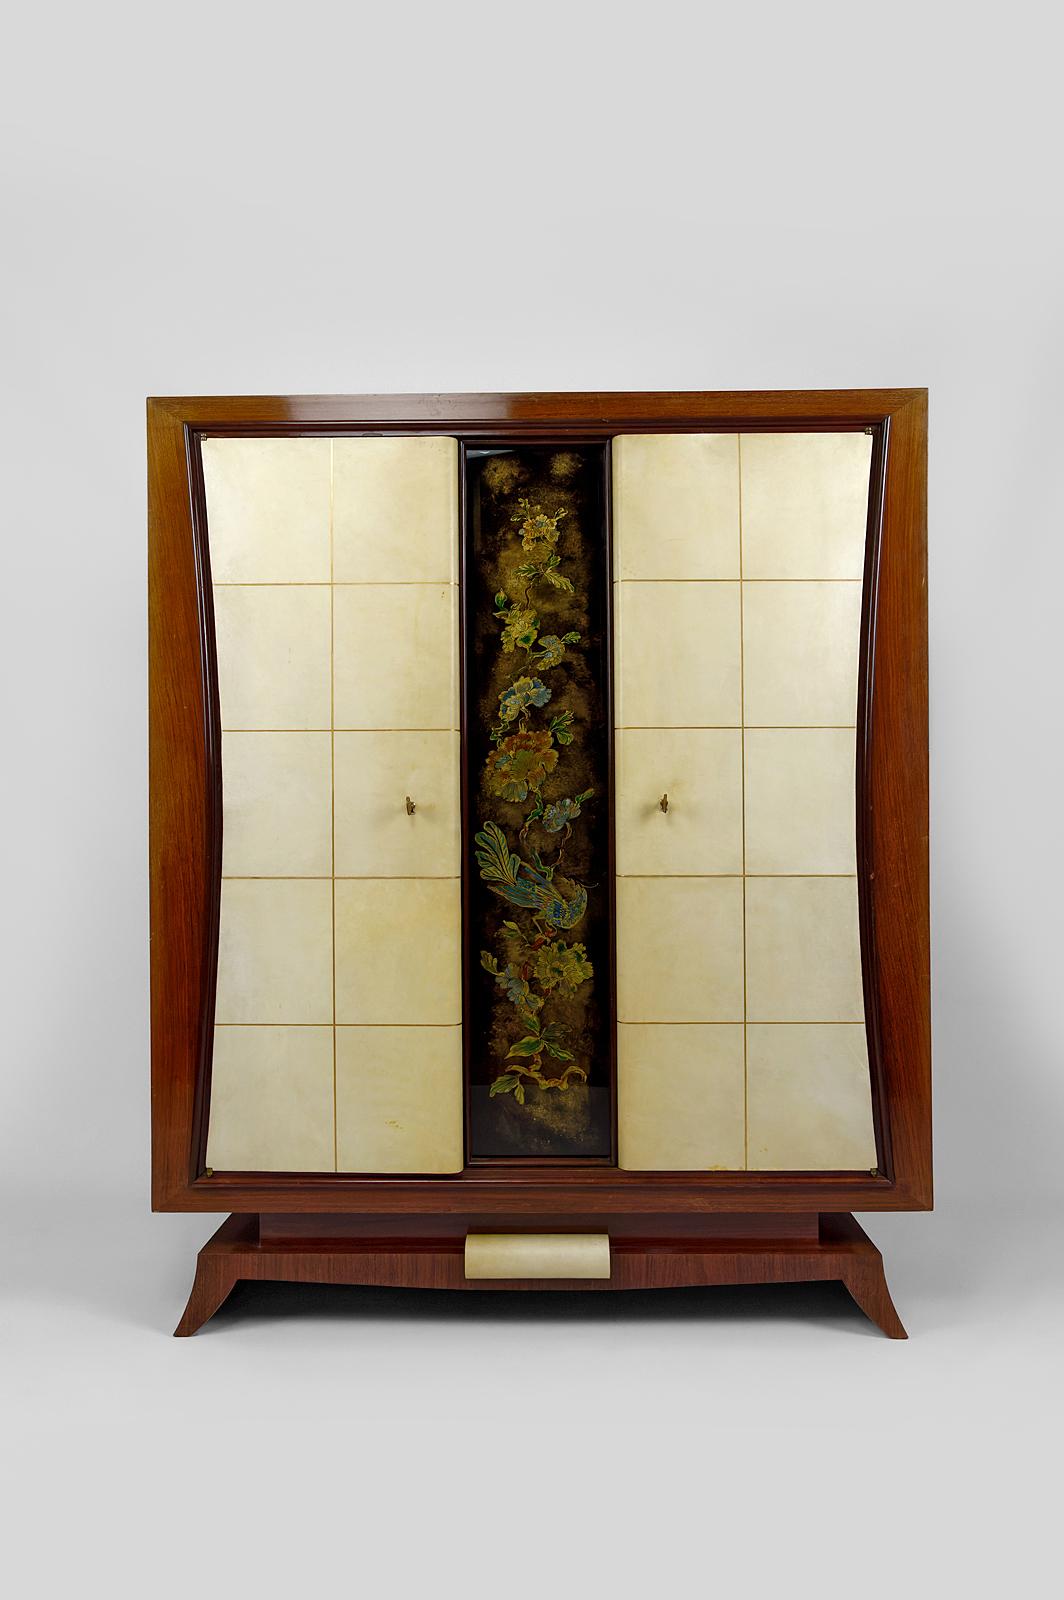 Mahagoni-Furnier
2 mit Vellumleder bezogene Türen, quadratisch mit Vergoldung.

In der Mitte befindet sich eine bemalte Glasplatte, die einen majestätischen Vogel auf einem Ast darstellt, umgeben von Blumen im japanischen Stil.

2 Schlüssel,